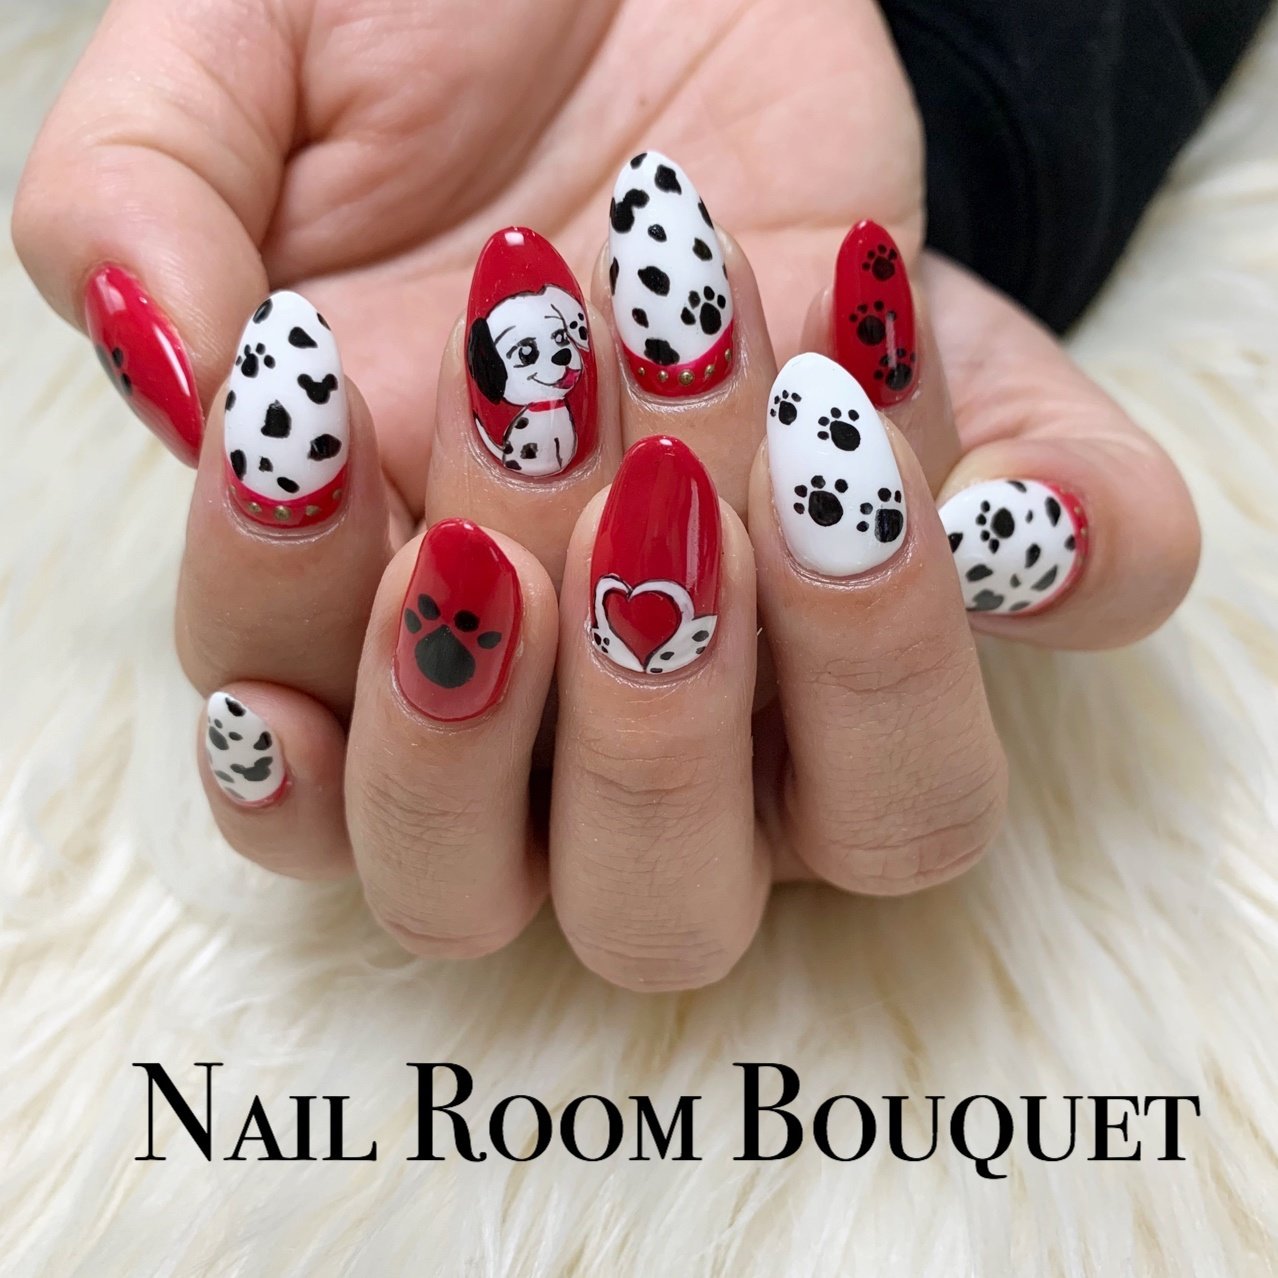 オールシーズン ハロウィン パーティー 女子会 ハンド Nail Room Bouquetのネイルデザイン No ネイルブック